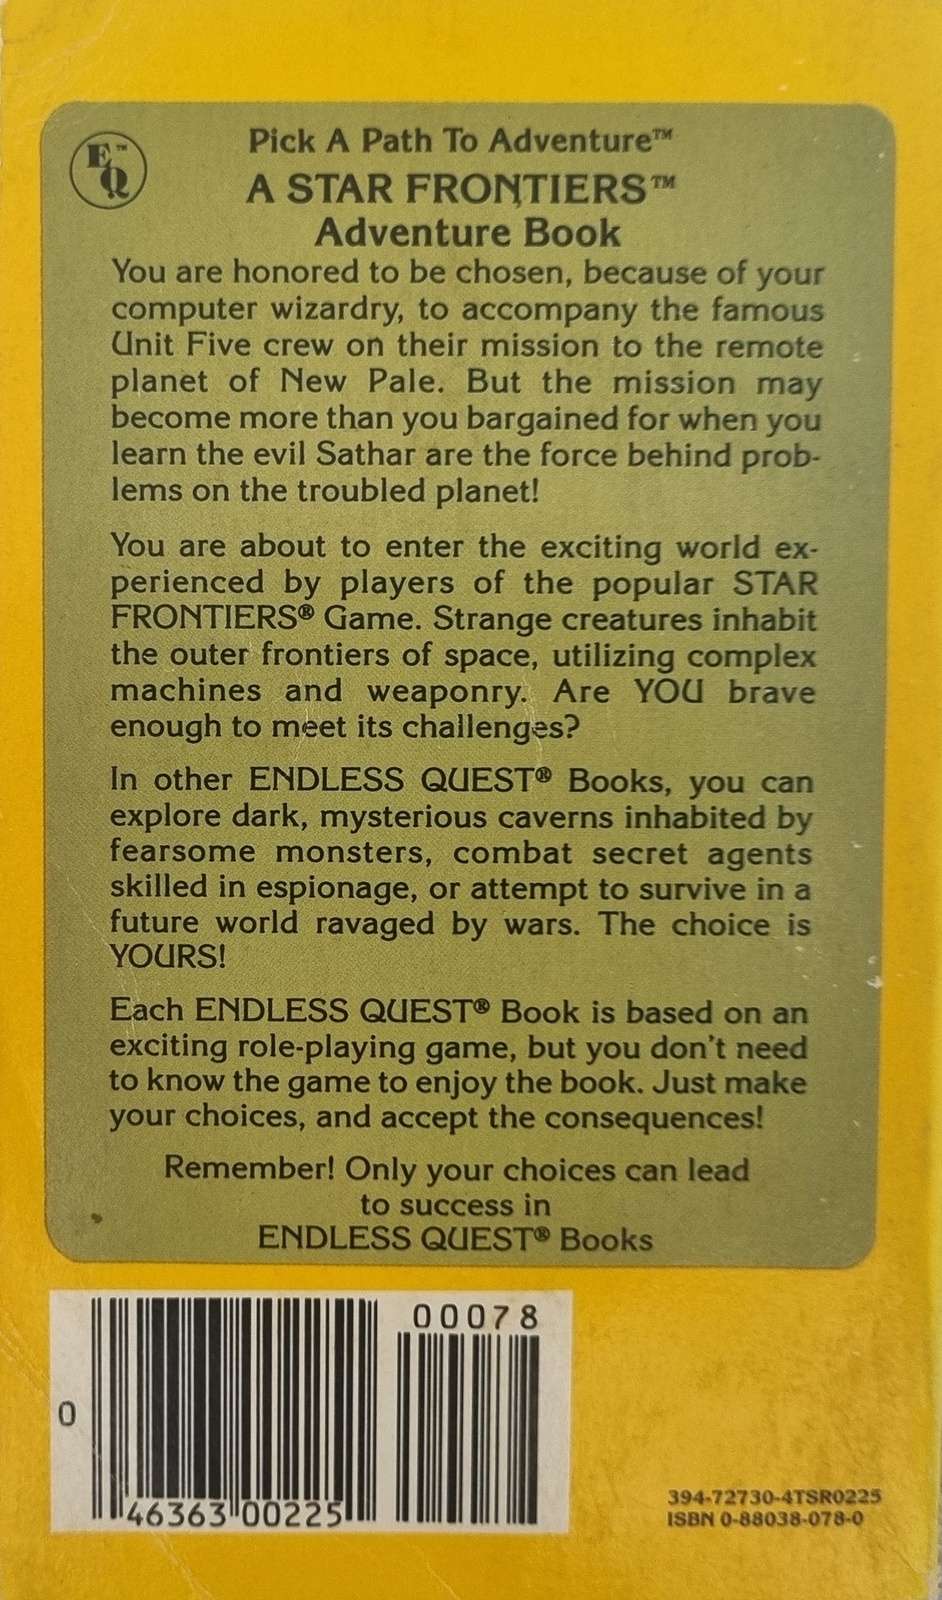 D&D Endless Quest Book - Captive Planet #17